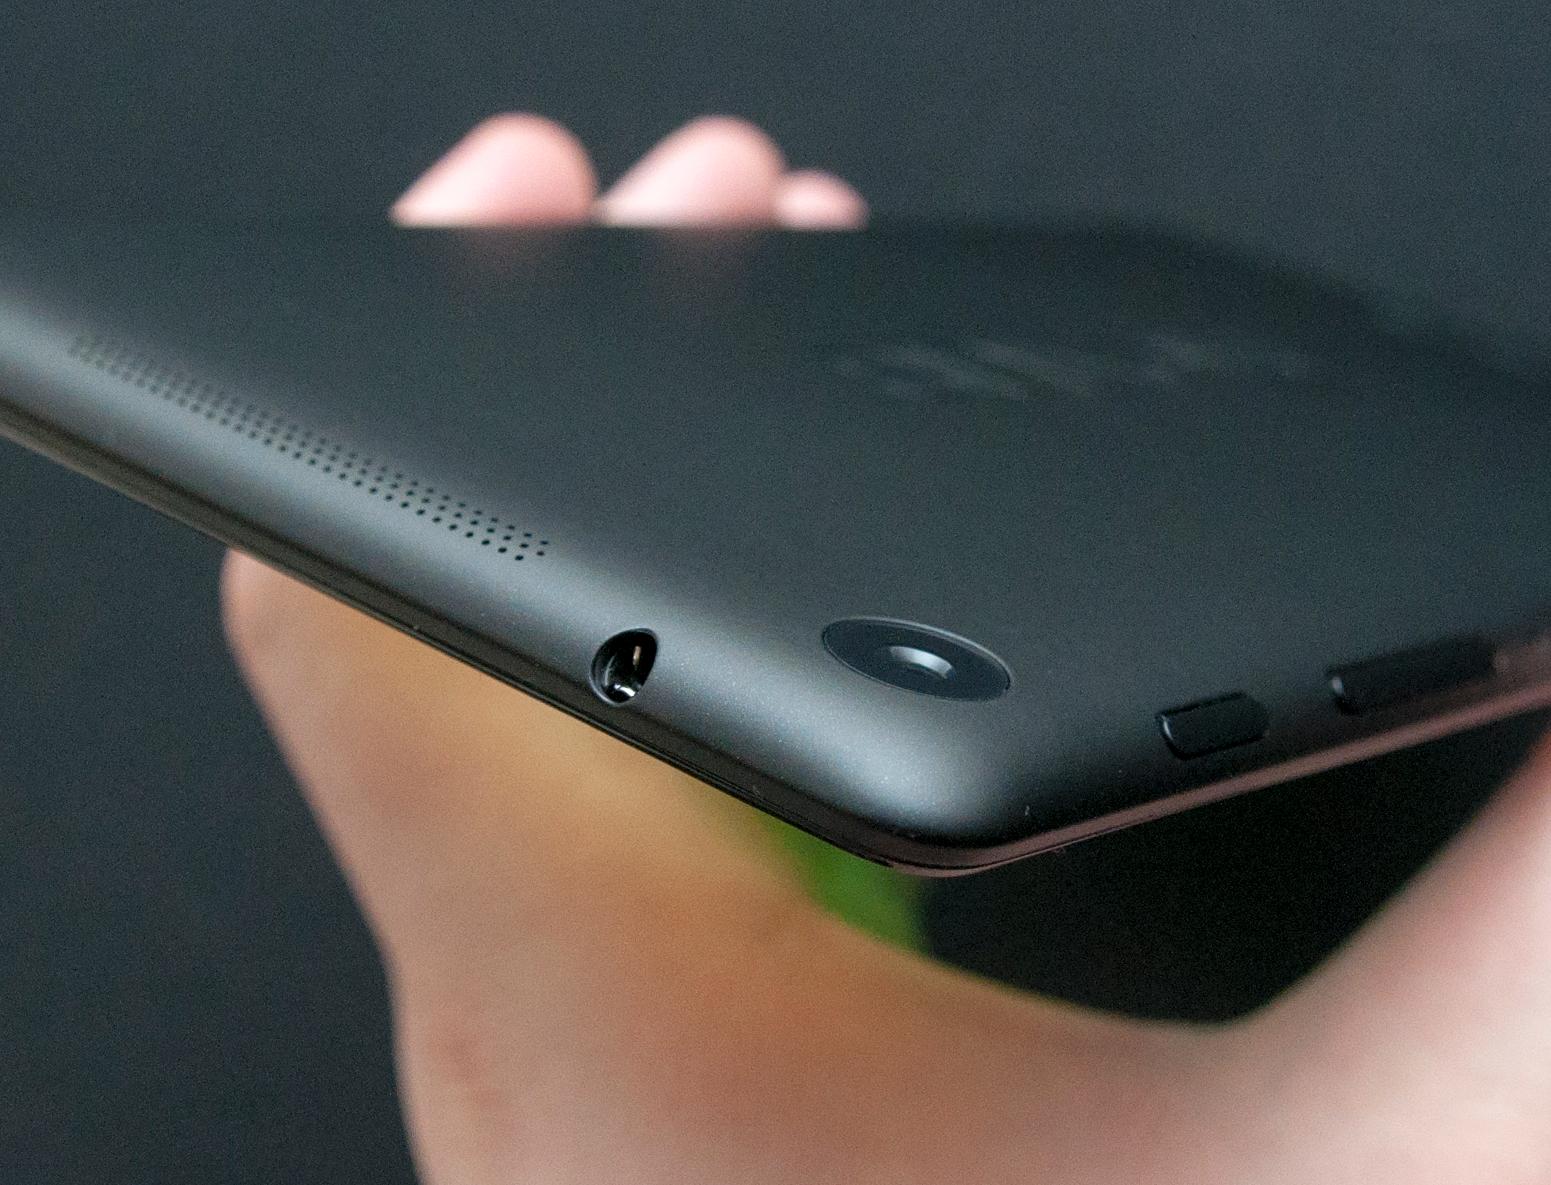 Nexus 7 kan gi god lydkvalitet i hodetelefoner, men det følger ikke med noen i esken.Foto: Finn Jarle Kvalheim, Amobil.no